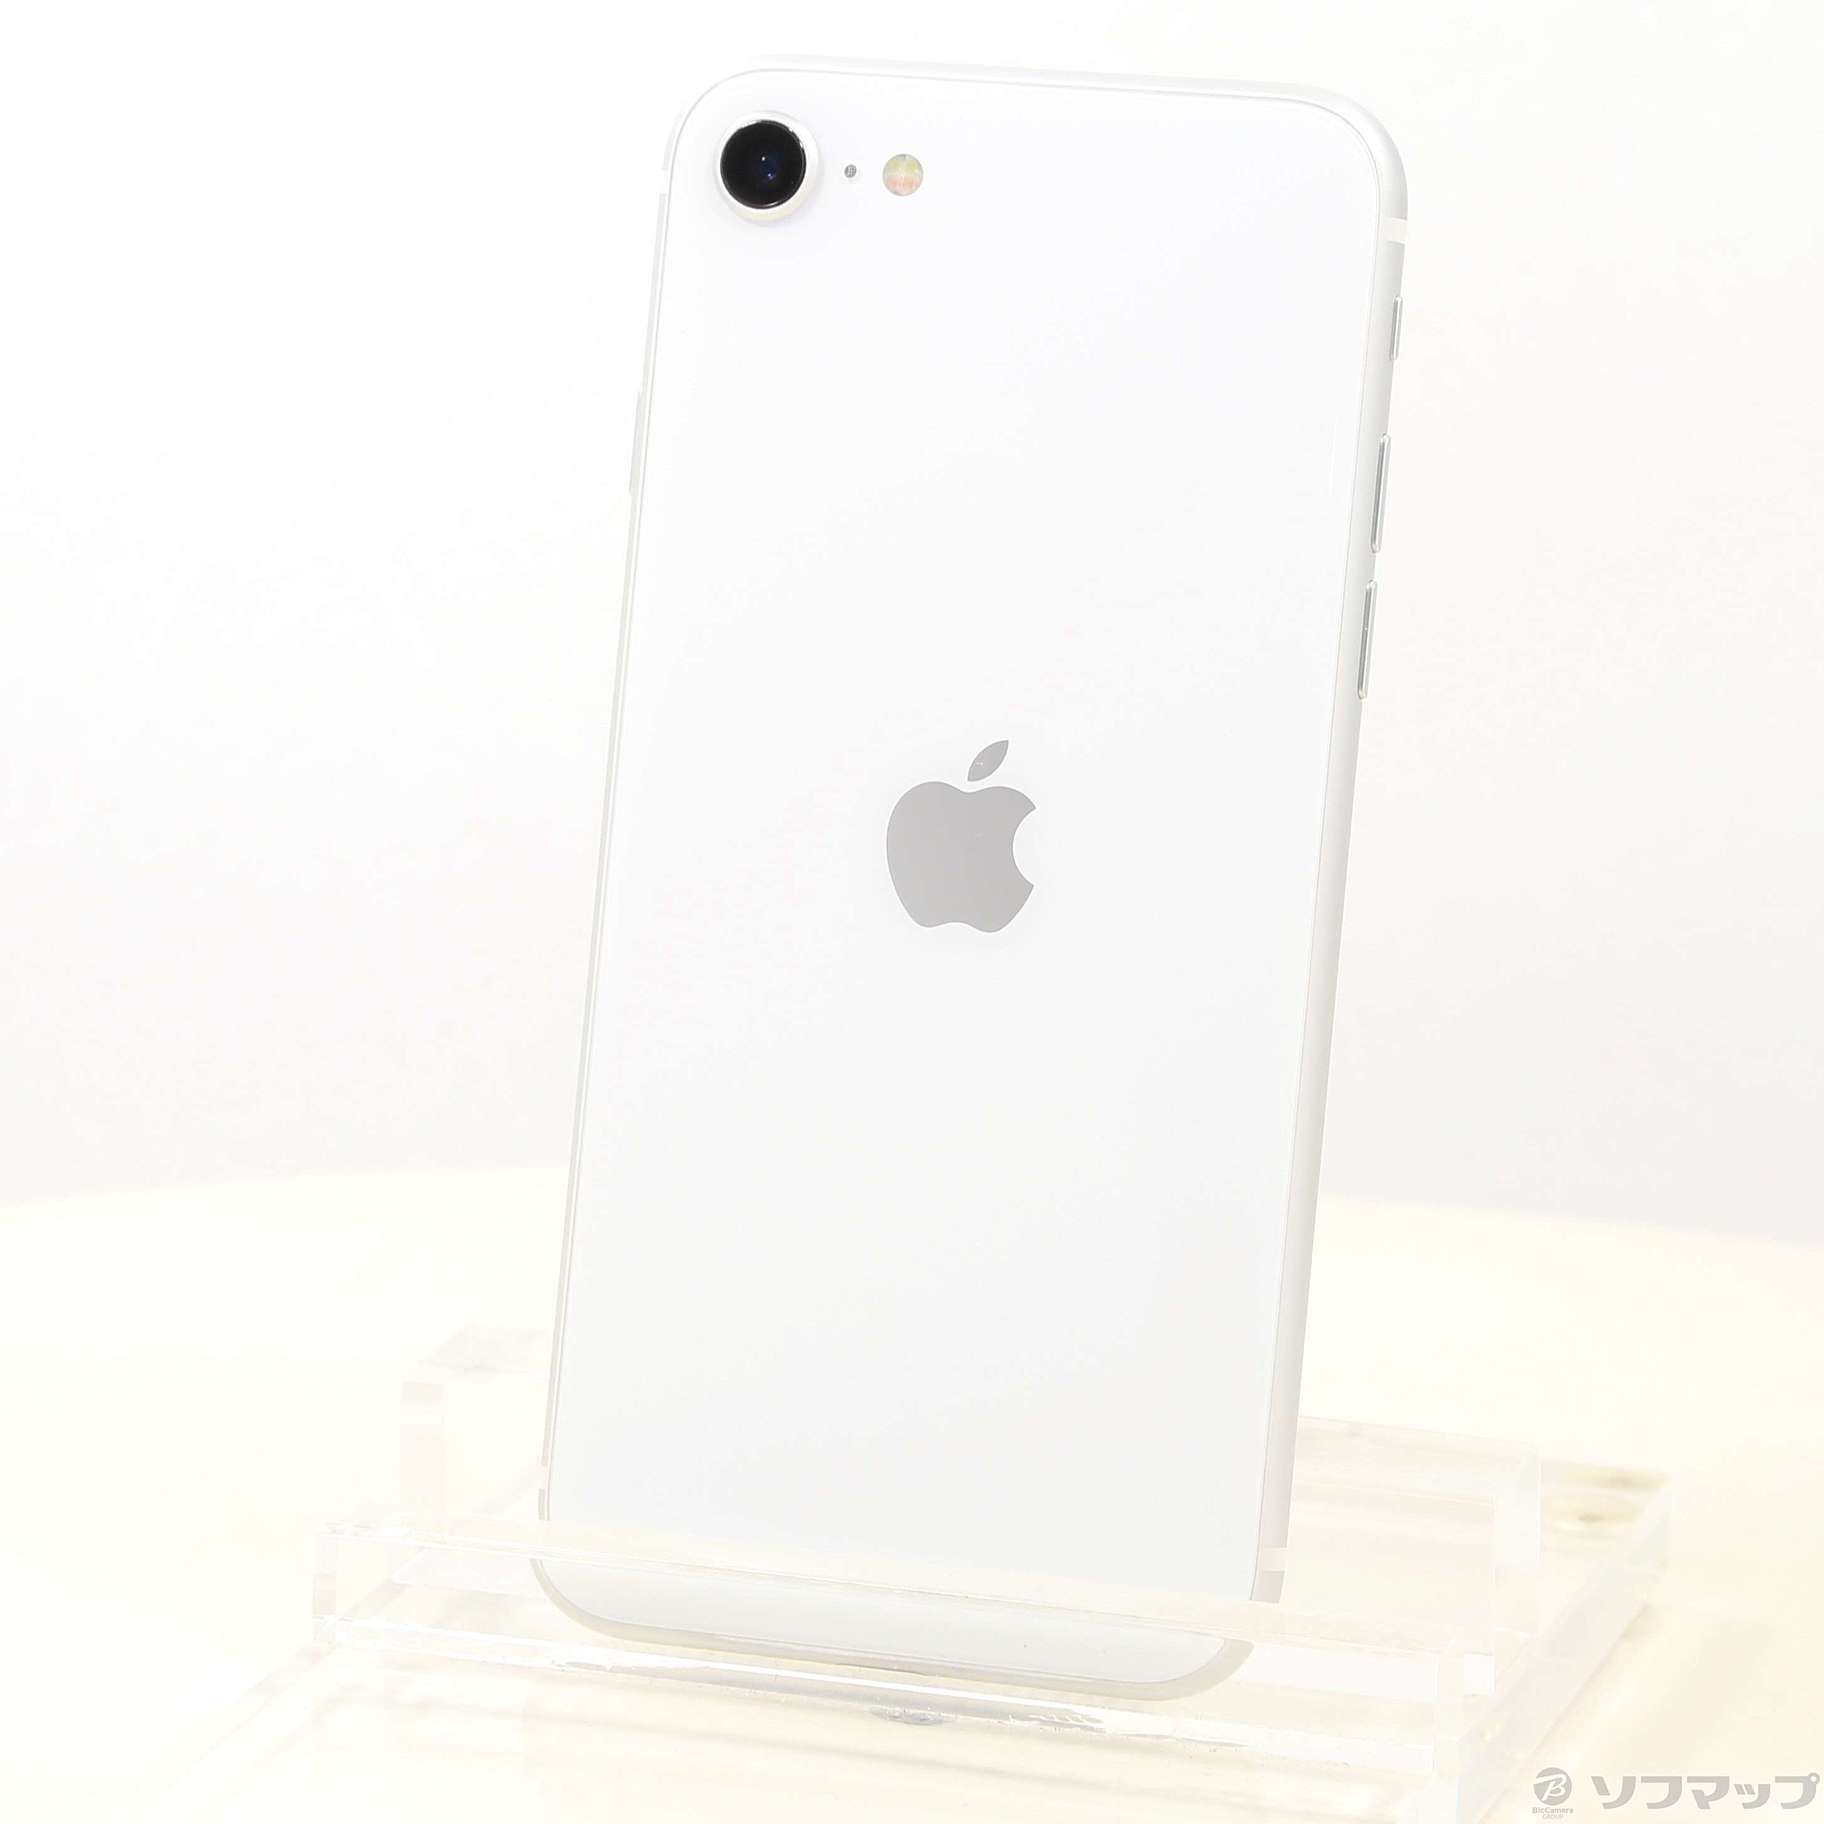 スマートフォン/携帯電話 スマートフォン本体 iPhone SE (第2世代) 64GB ホワイト SIMフリー | myglobaltax.com